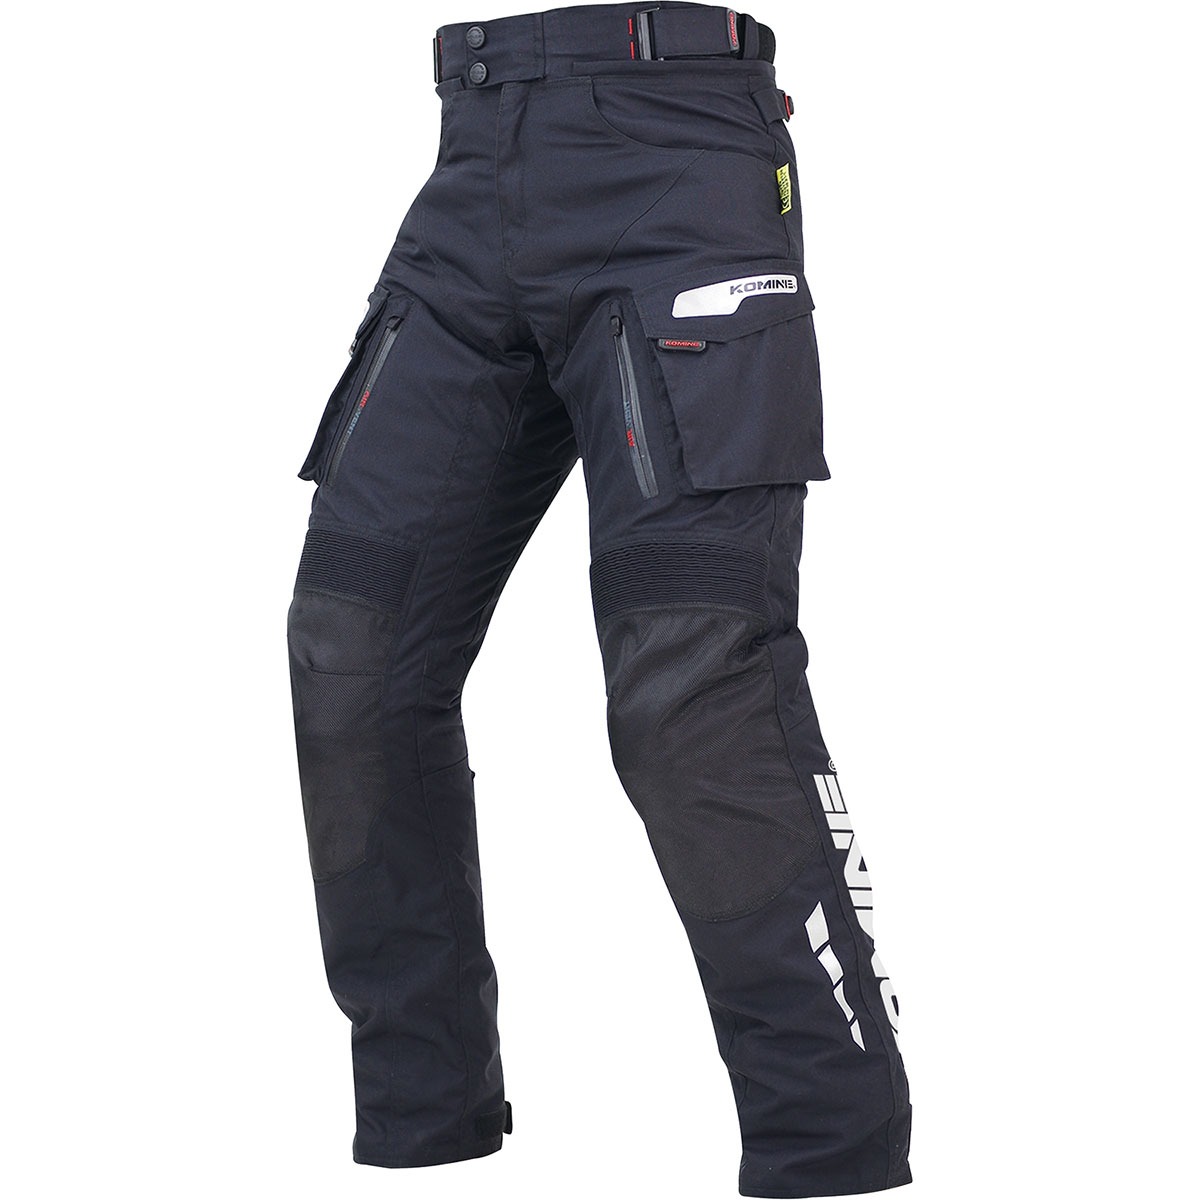 コミネ Komine バイク用 パンツ Pants PK-914 お値打ち価格で ウインターパンツ-ゲルマニア 人気上昇中 ブラック 黒 2XL BK 2XLサイズ 07-914